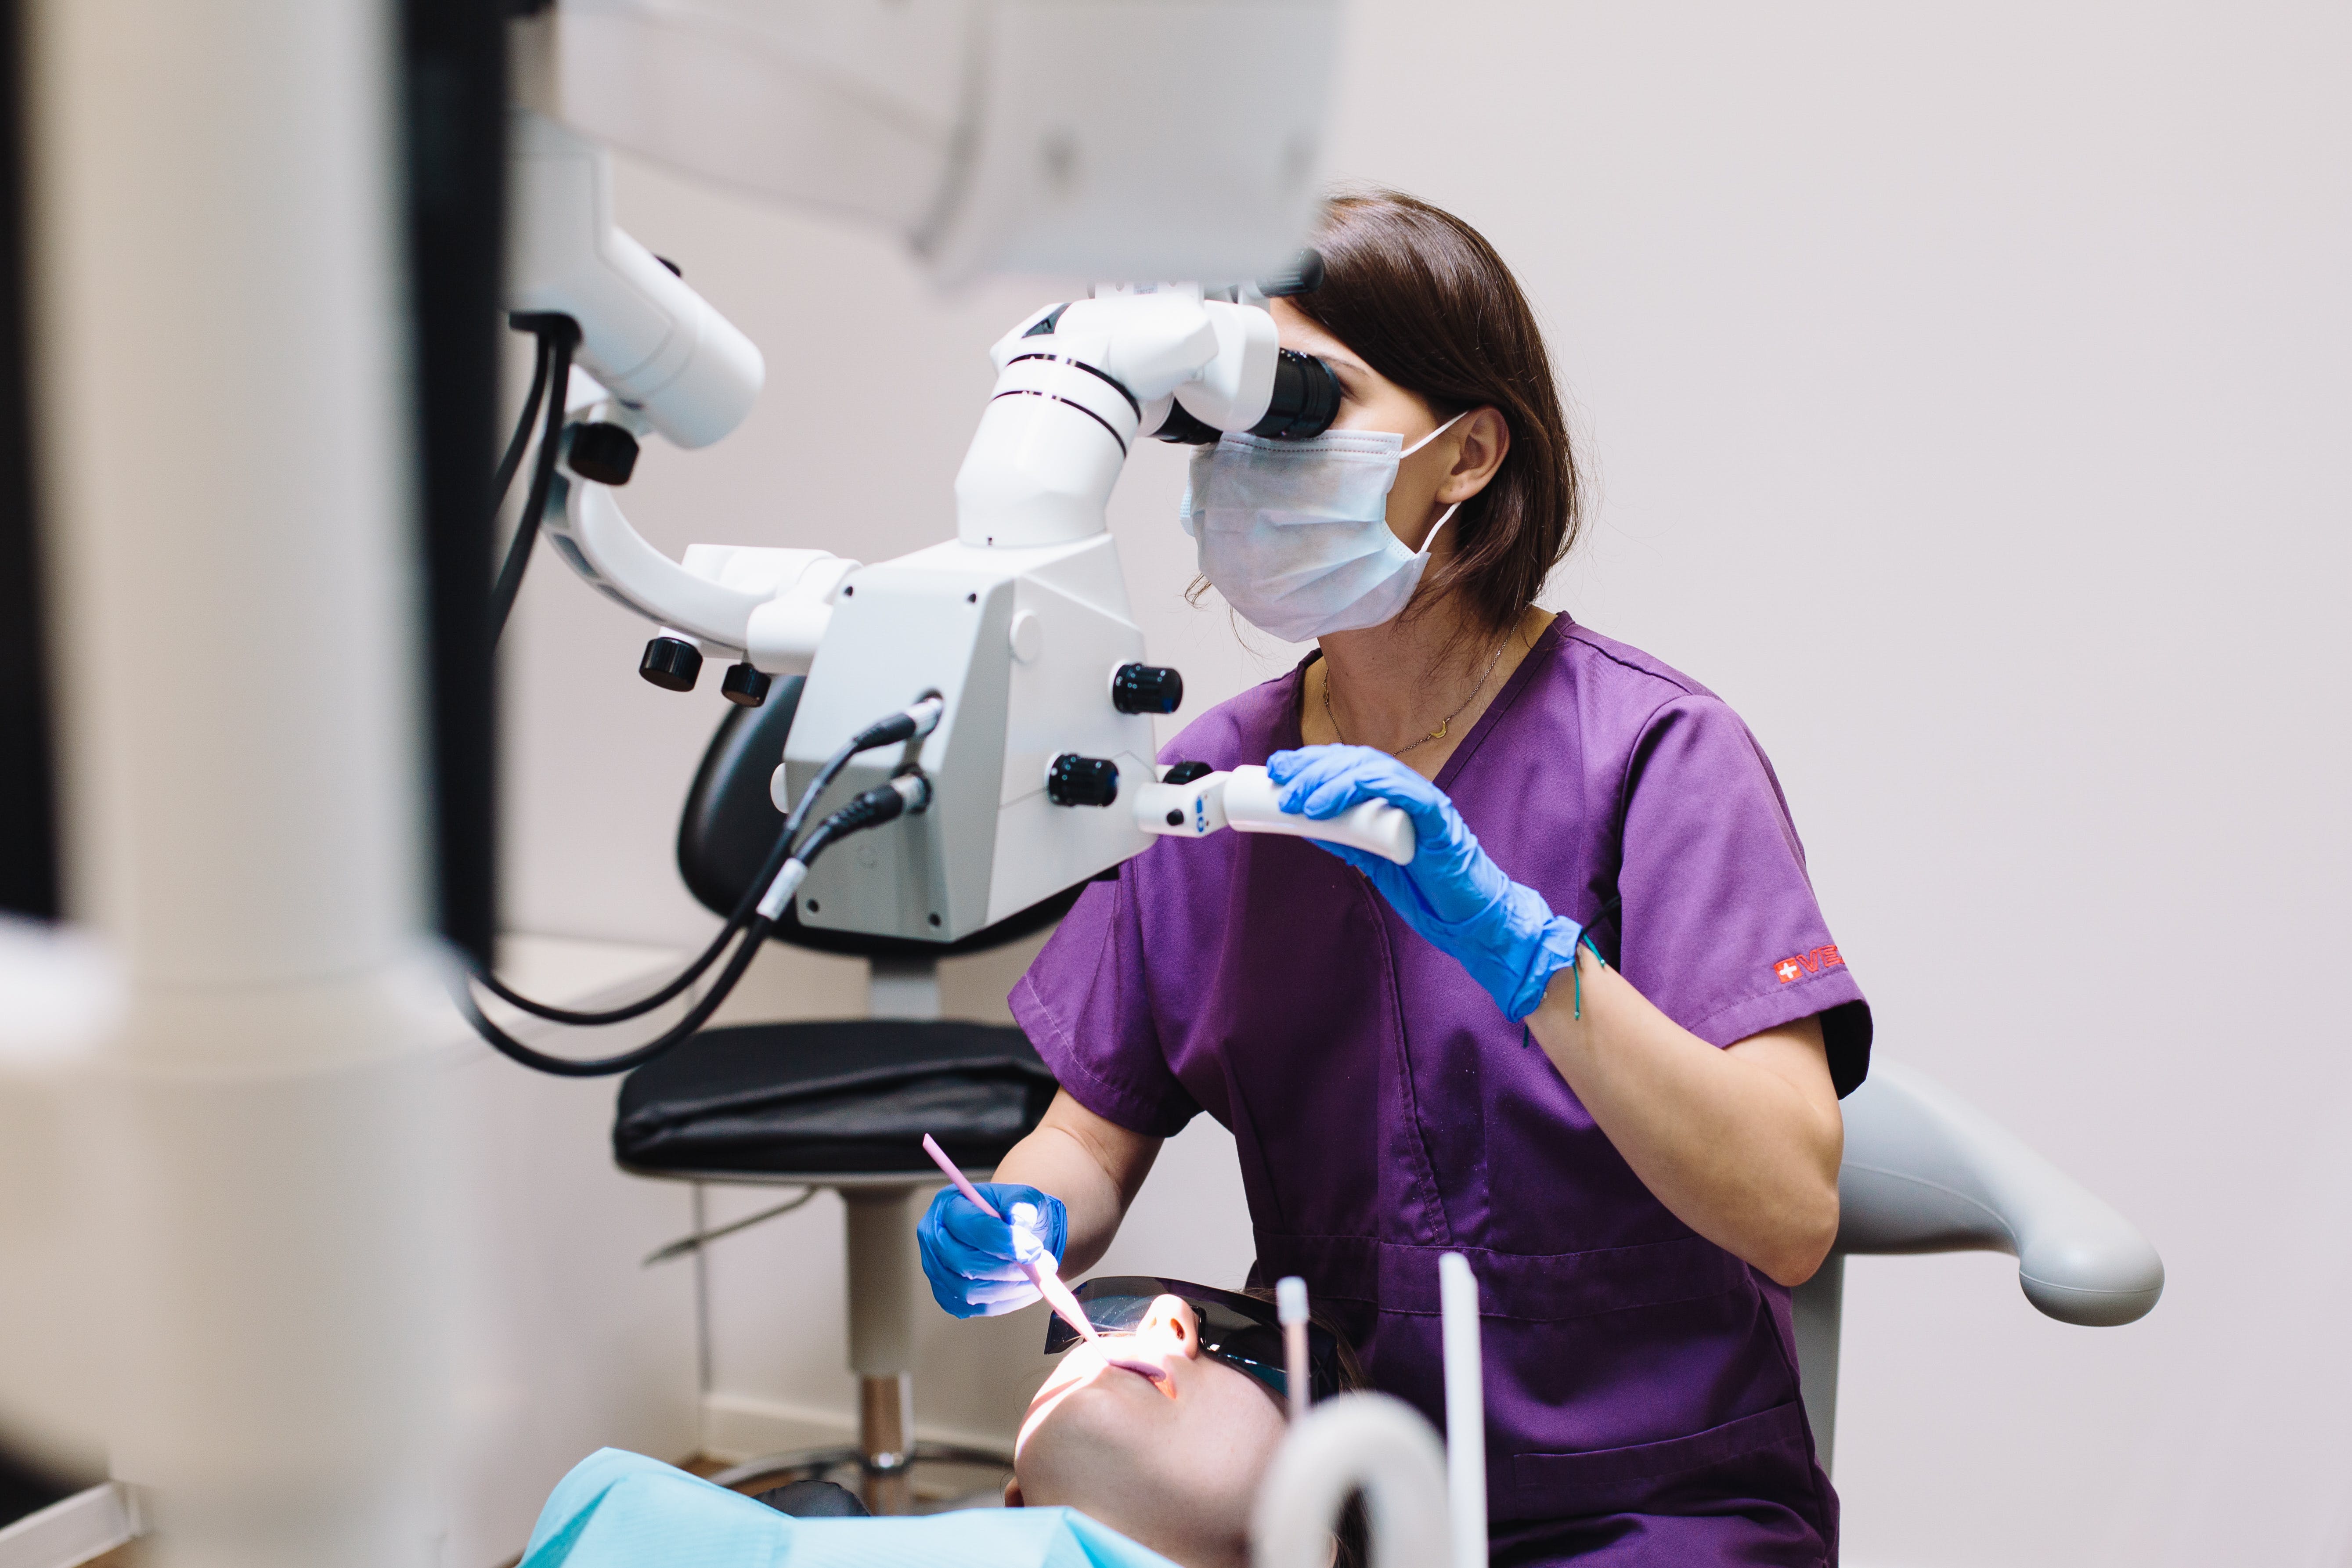 Dentist examining a patient. | Source: Pexels